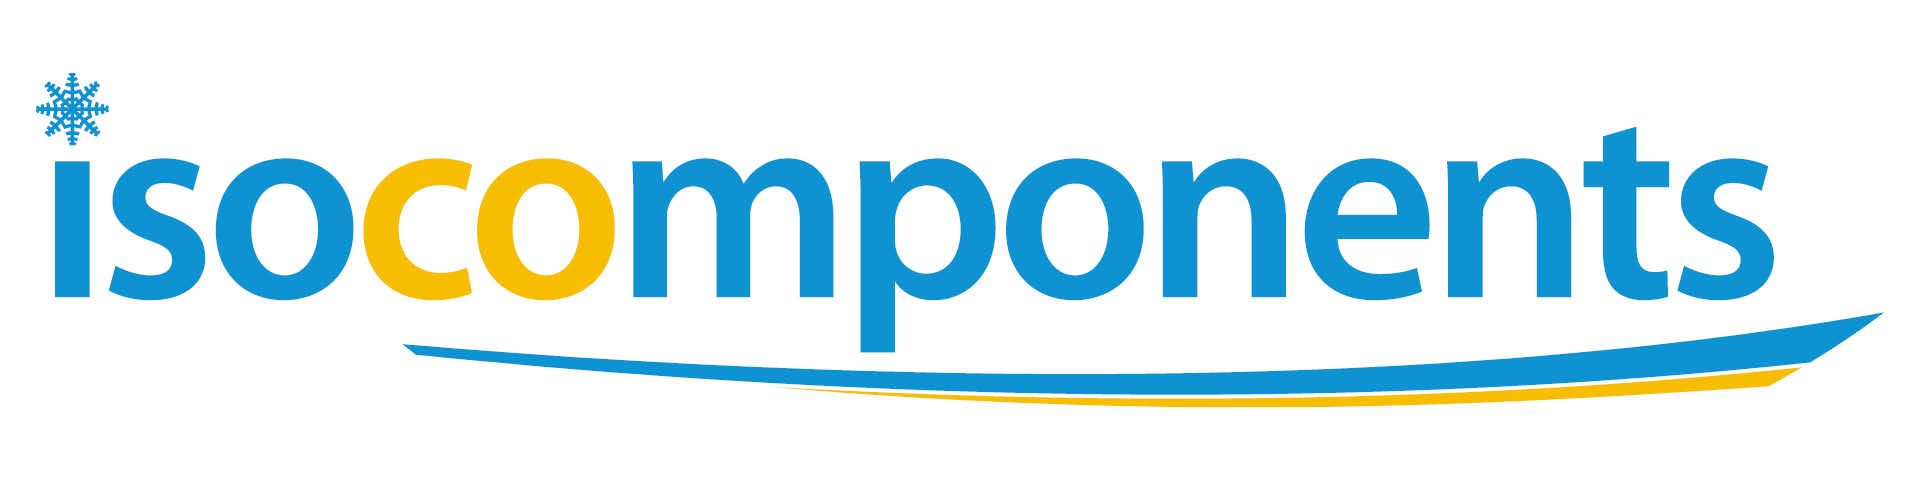 Frigro Isocomponents logo